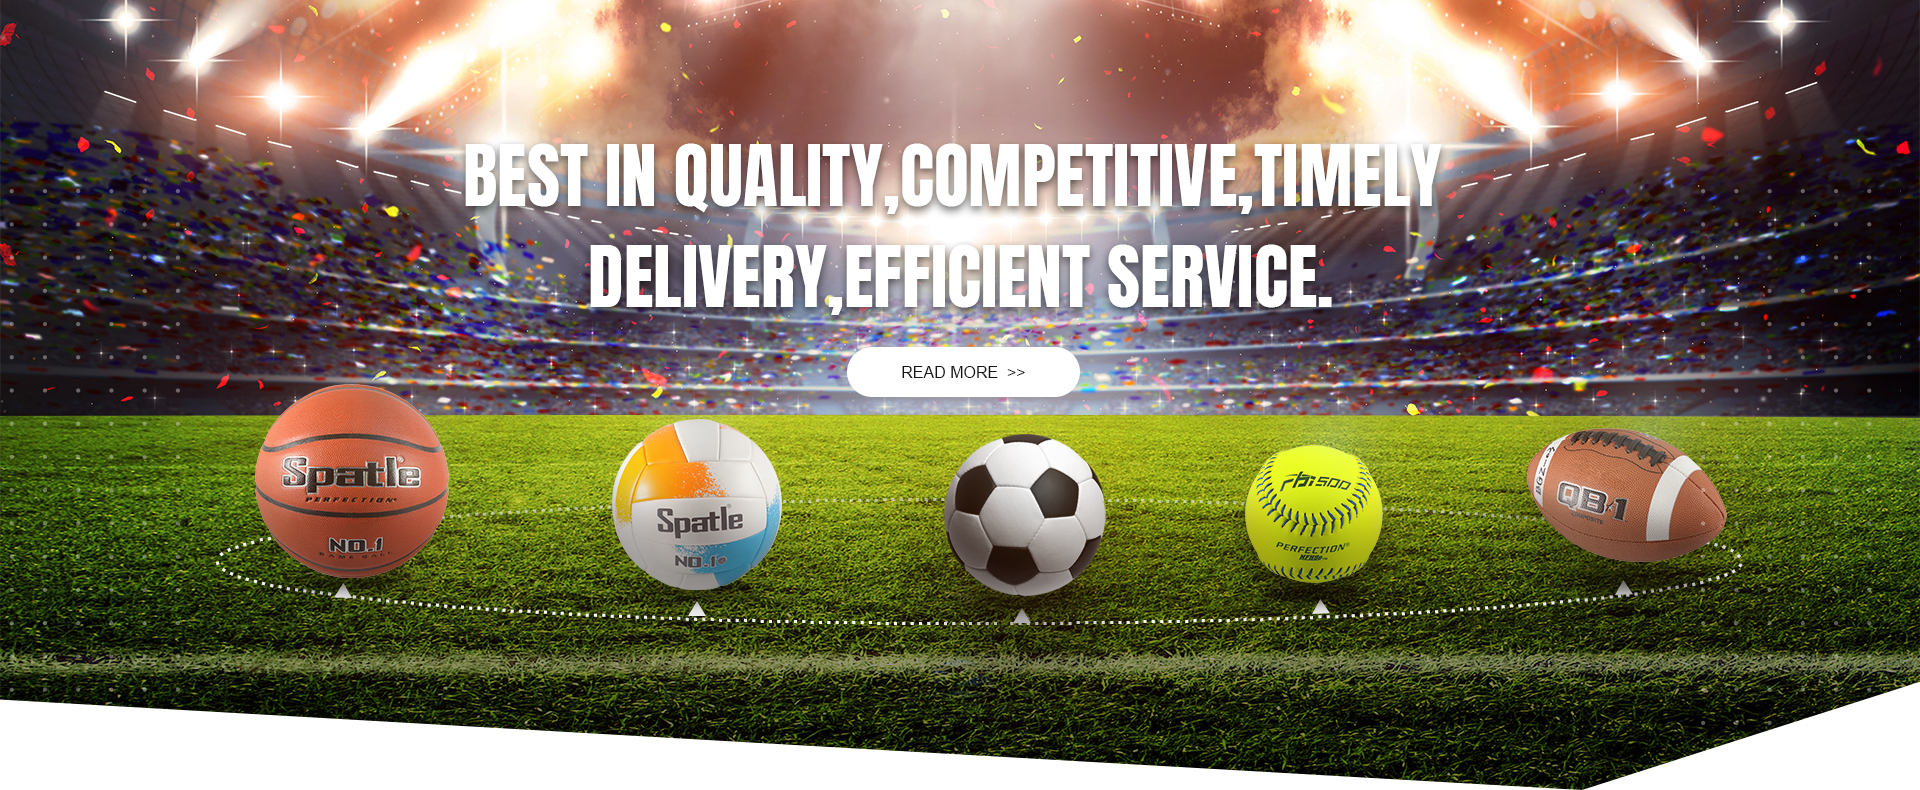 UK Soccer manufacturer